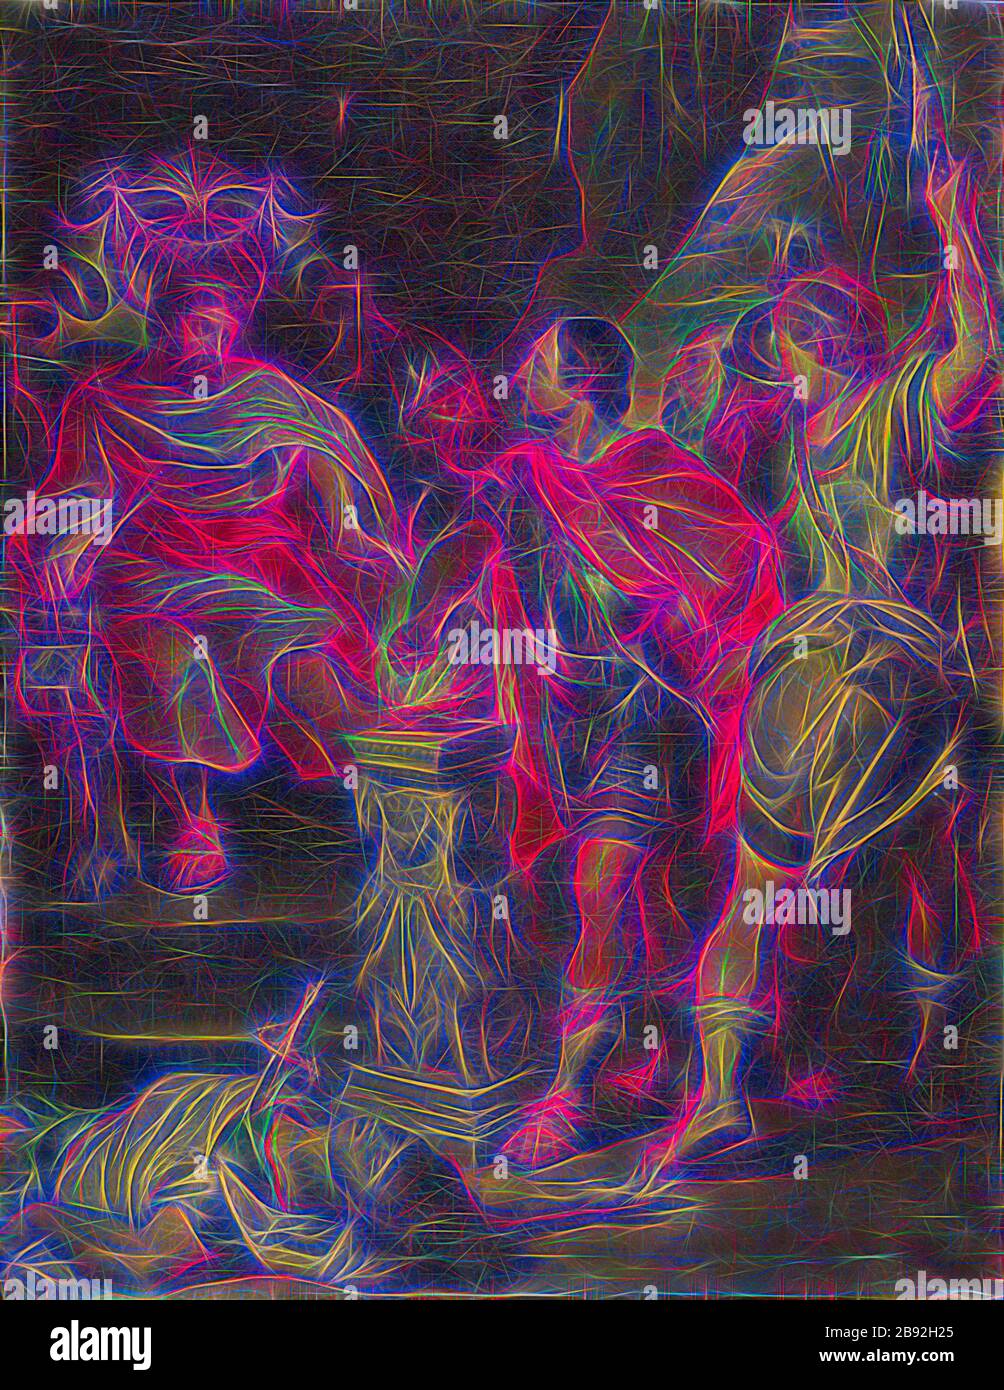 Mucius Scaevola devant Porsenna, huile sur toile, 51,5 x 39,5 cm, signé à l'envers, en haut à gauche: N ° 112, JRHuber pinxit [JRH ligaté], Johann Rudolf Huber d. Ä., Bâle 1668–1748 Bâle, Peter Paul Rubens, (Kopie nach / Copy After), Siegen 1577–1640 Antwerpen, repensé par Gibon, conception de gai gai chaleureux de luminosité et de rayonnement de lumière. L'art classique réinventé avec une touche moderne. La photographie inspirée du futurisme, qui embrasse l'énergie dynamique de la technologie moderne, du mouvement, de la vitesse et révolutionne la culture. Banque D'Images